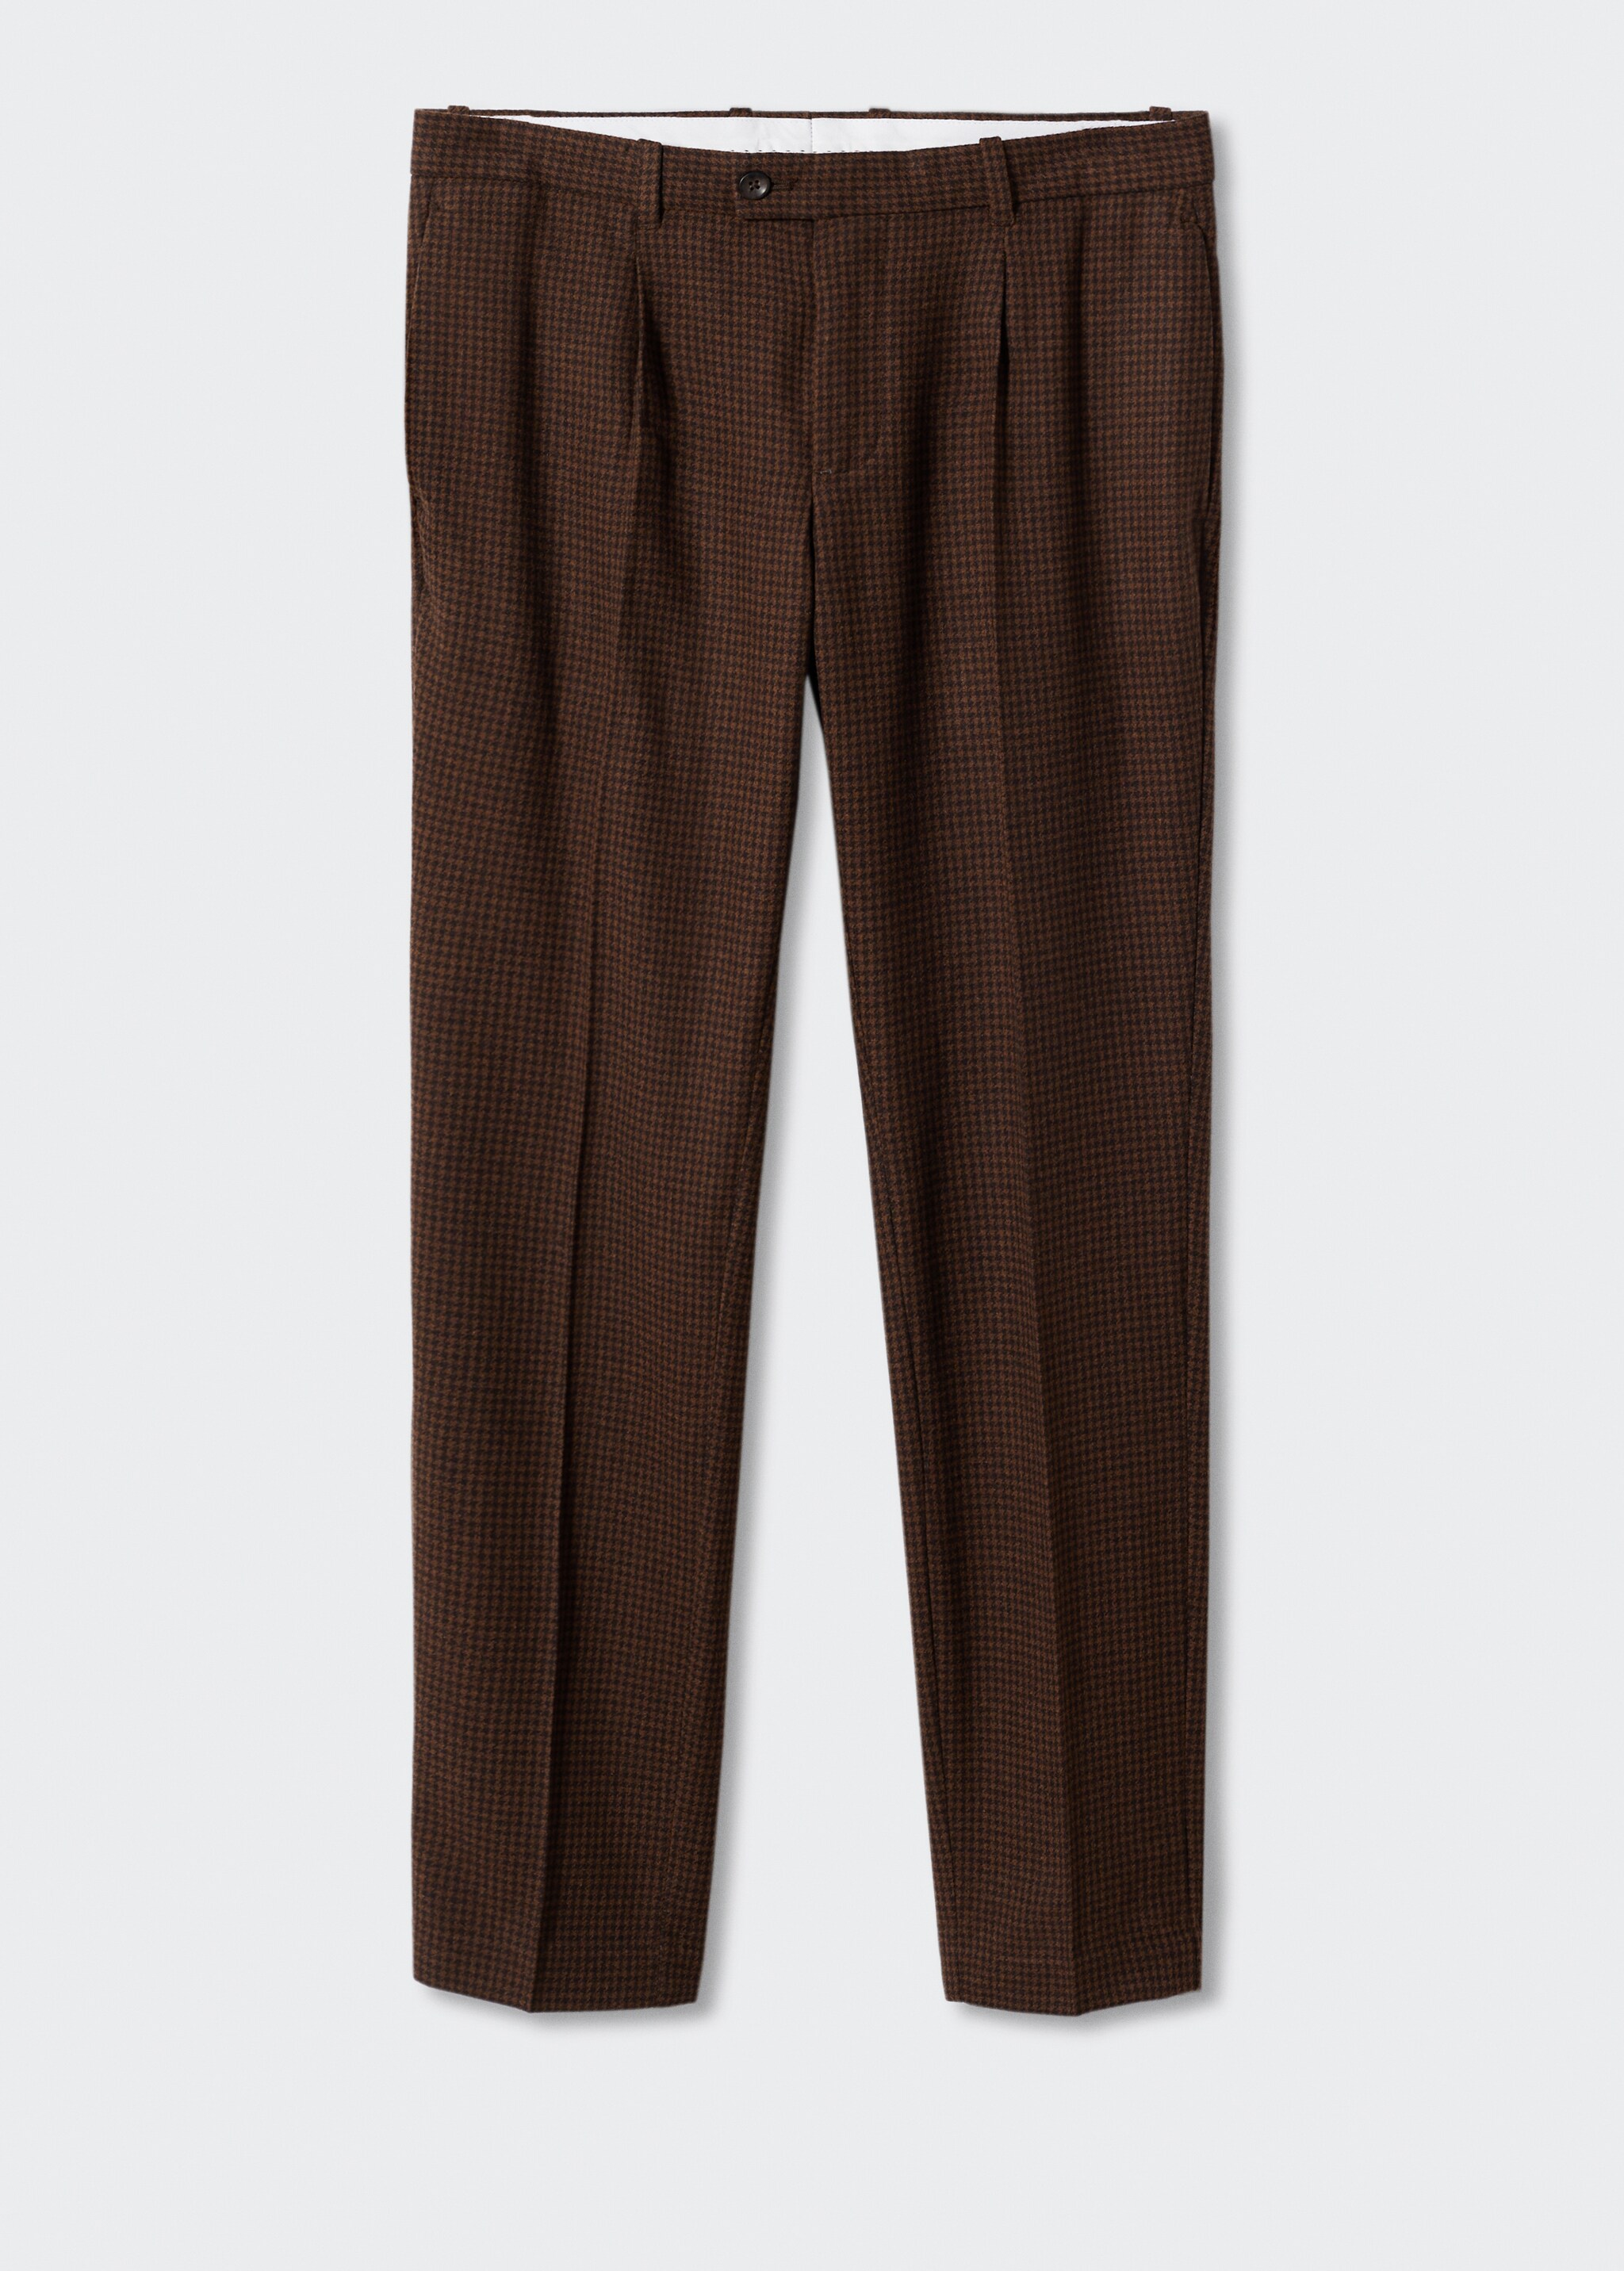 Pantalons llana quadres - Article sense model